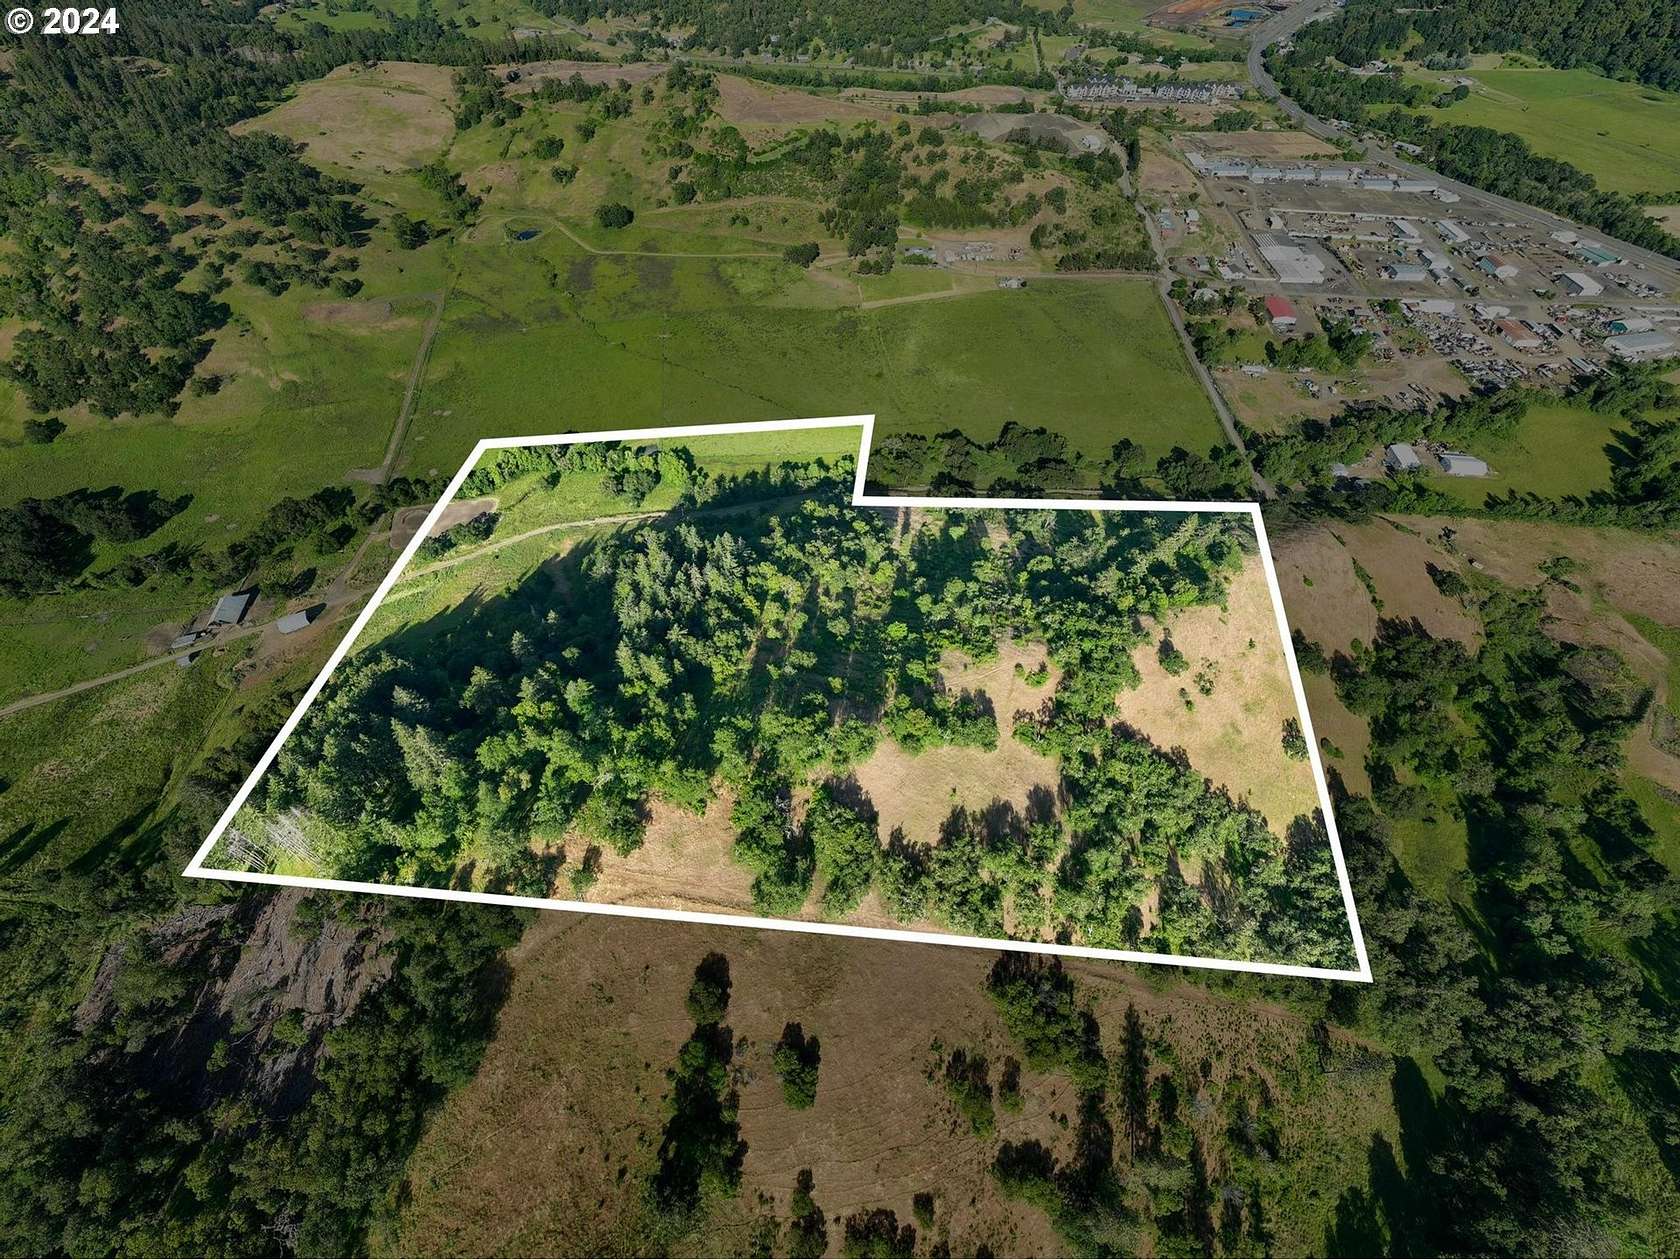 42 Acres of Land for Sale in Roseburg, Oregon